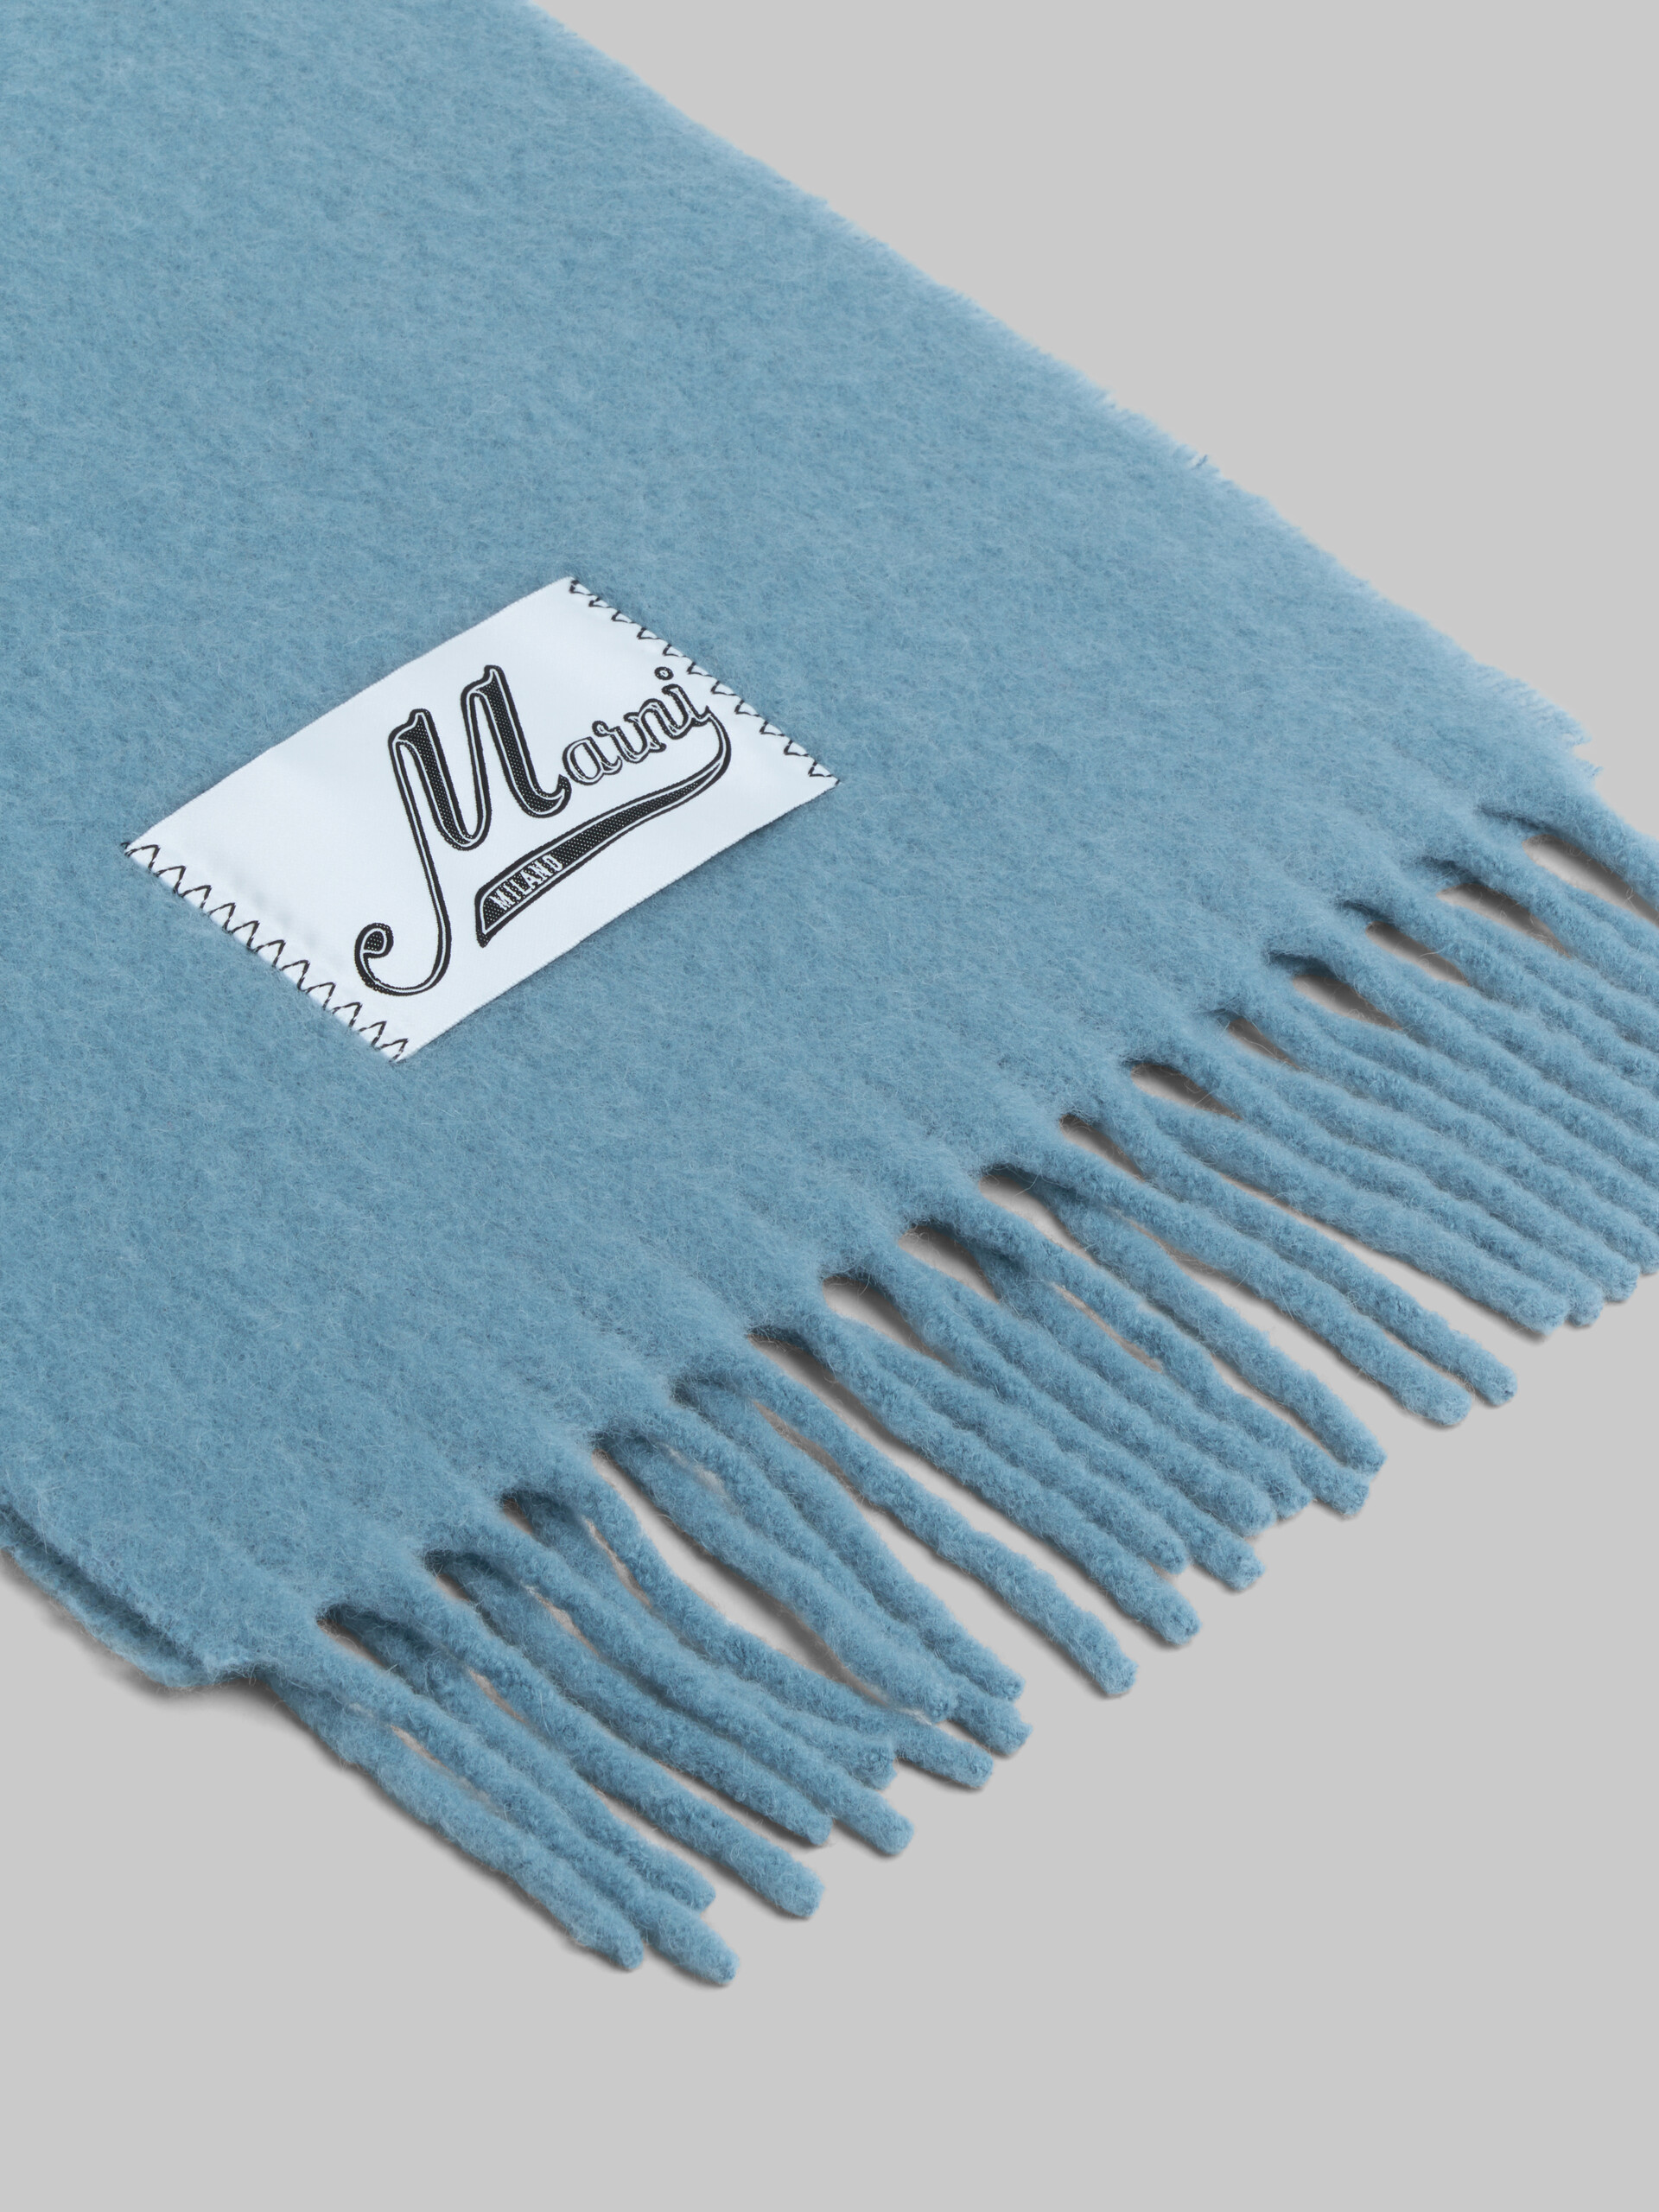 Bufanda de alpaca azul claro - Bufandas - Image 4